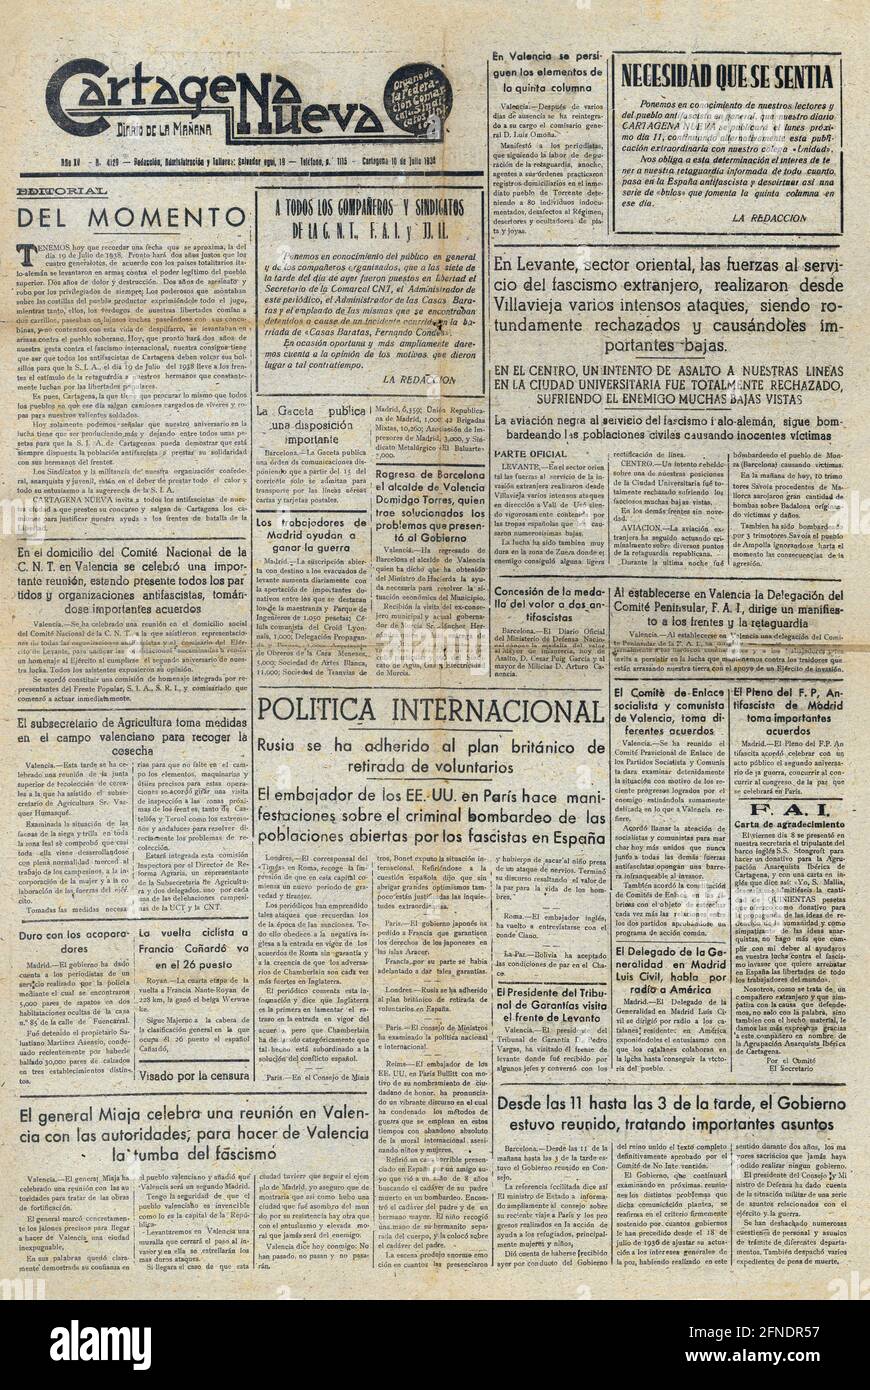 Guerra civil española (1936-1939). Portada del diario de la mañana Cartagena  Nueva, julio de 1938 Stock Photo - Alamy